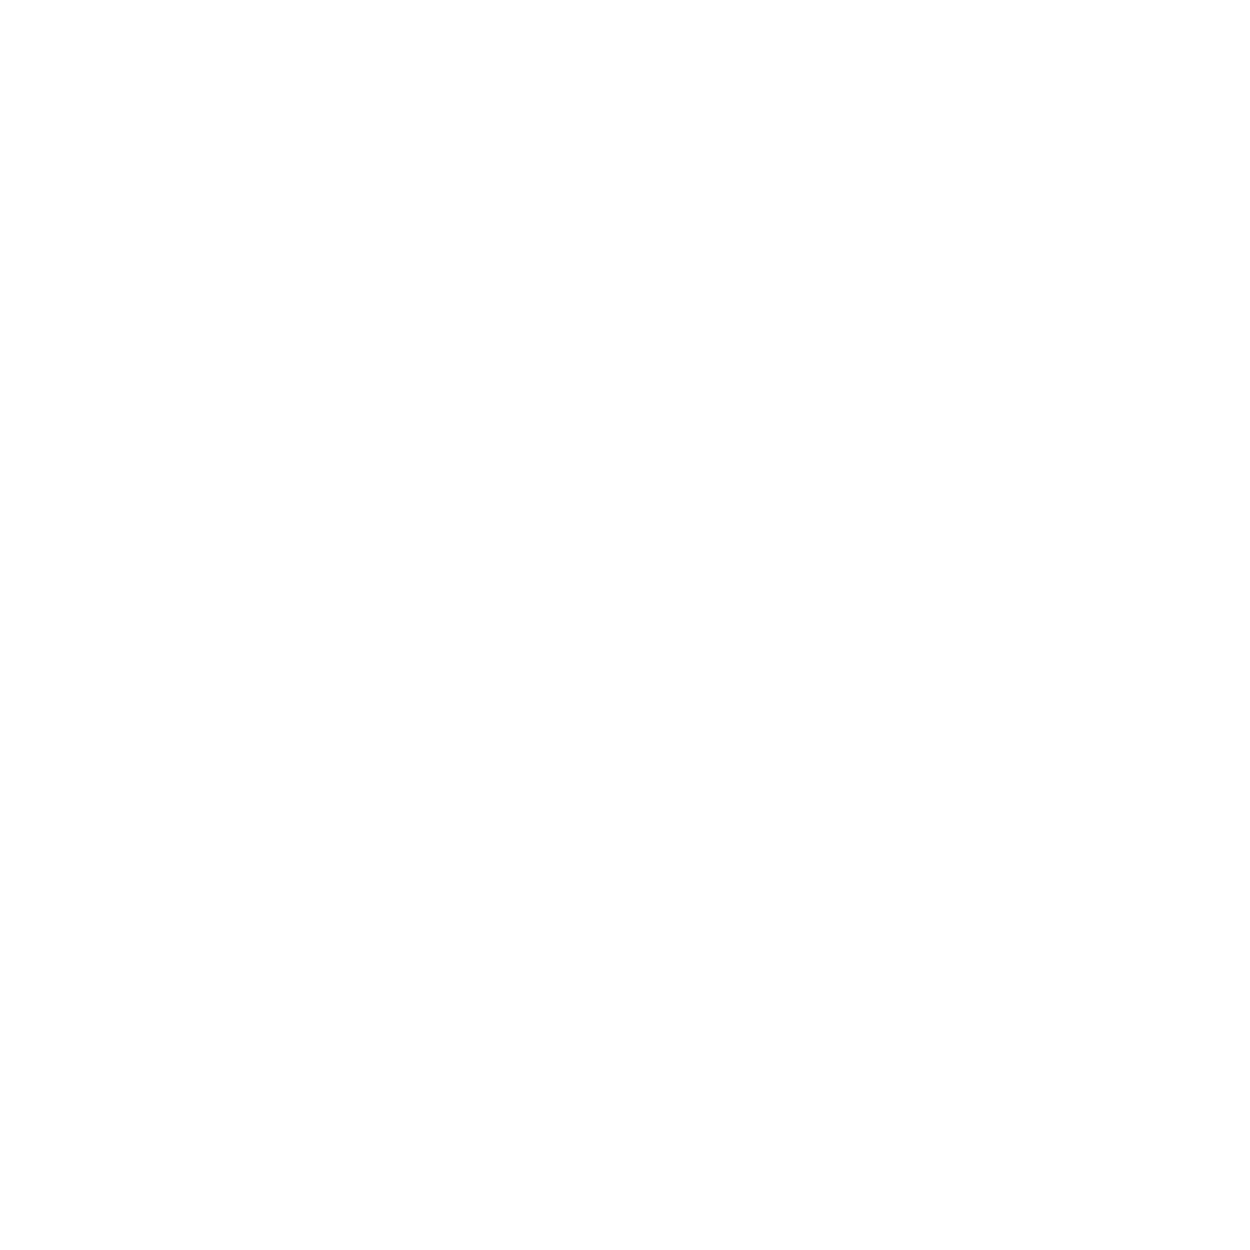 Nestle-01